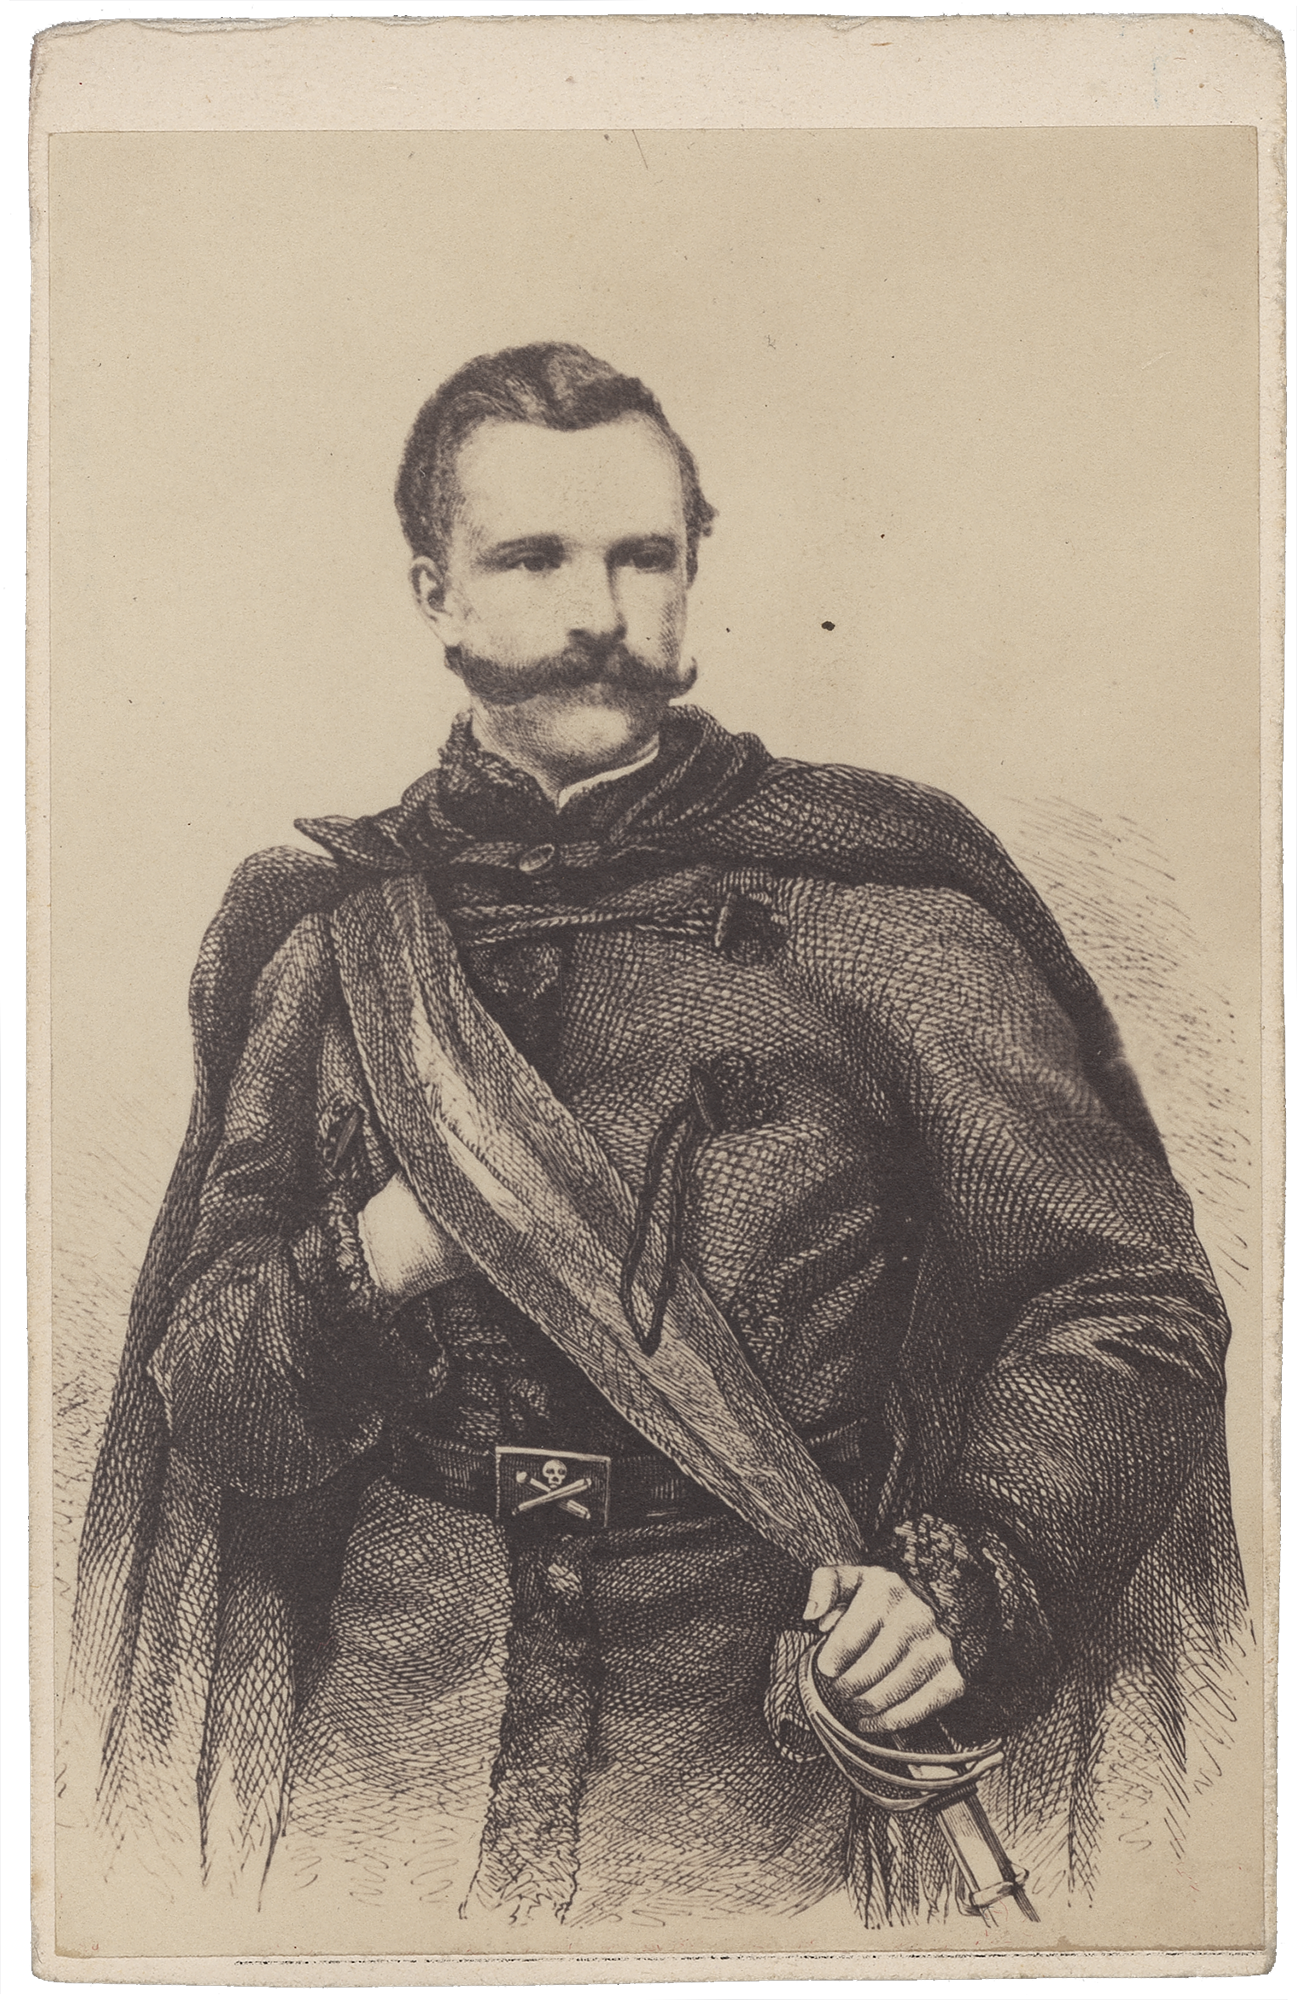 Fotografia archiwalna, czarno-biała, przedstawiająca mężczyznę z bujnym wąsem, ubranego w mundur powstańczy z 1863 roku, w ujęciu do bioder, z głową lekko zwróconą w prawo, tło neutralne.